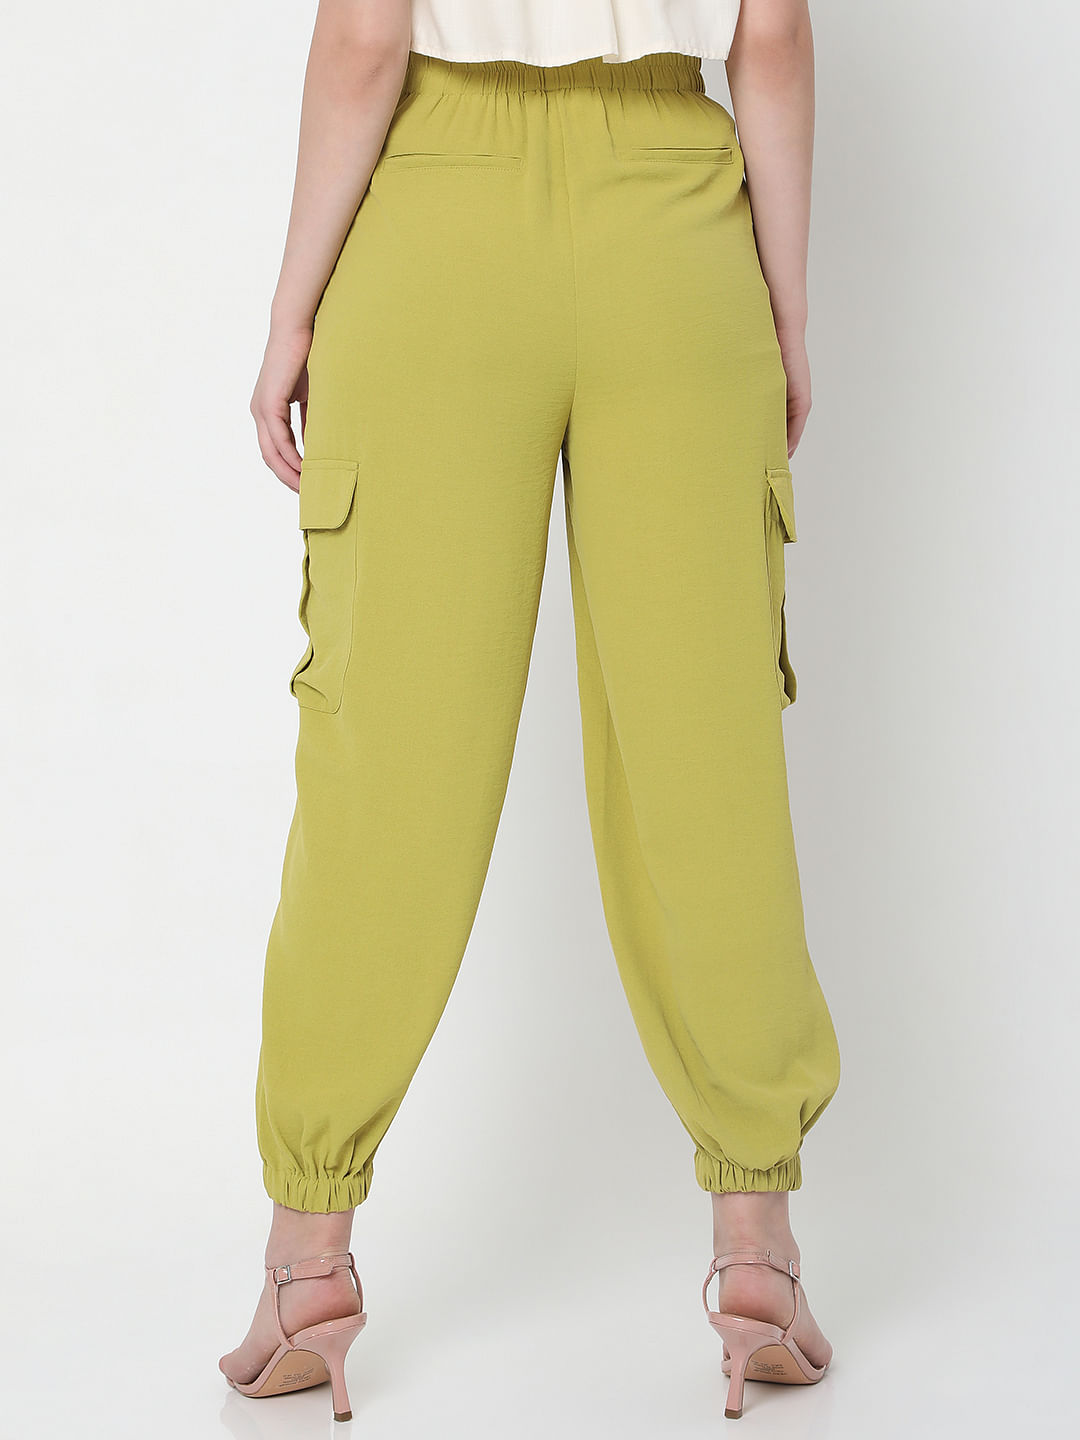 Buy Green Trousers  Pants for Women by Oxxo Online  Ajiocom